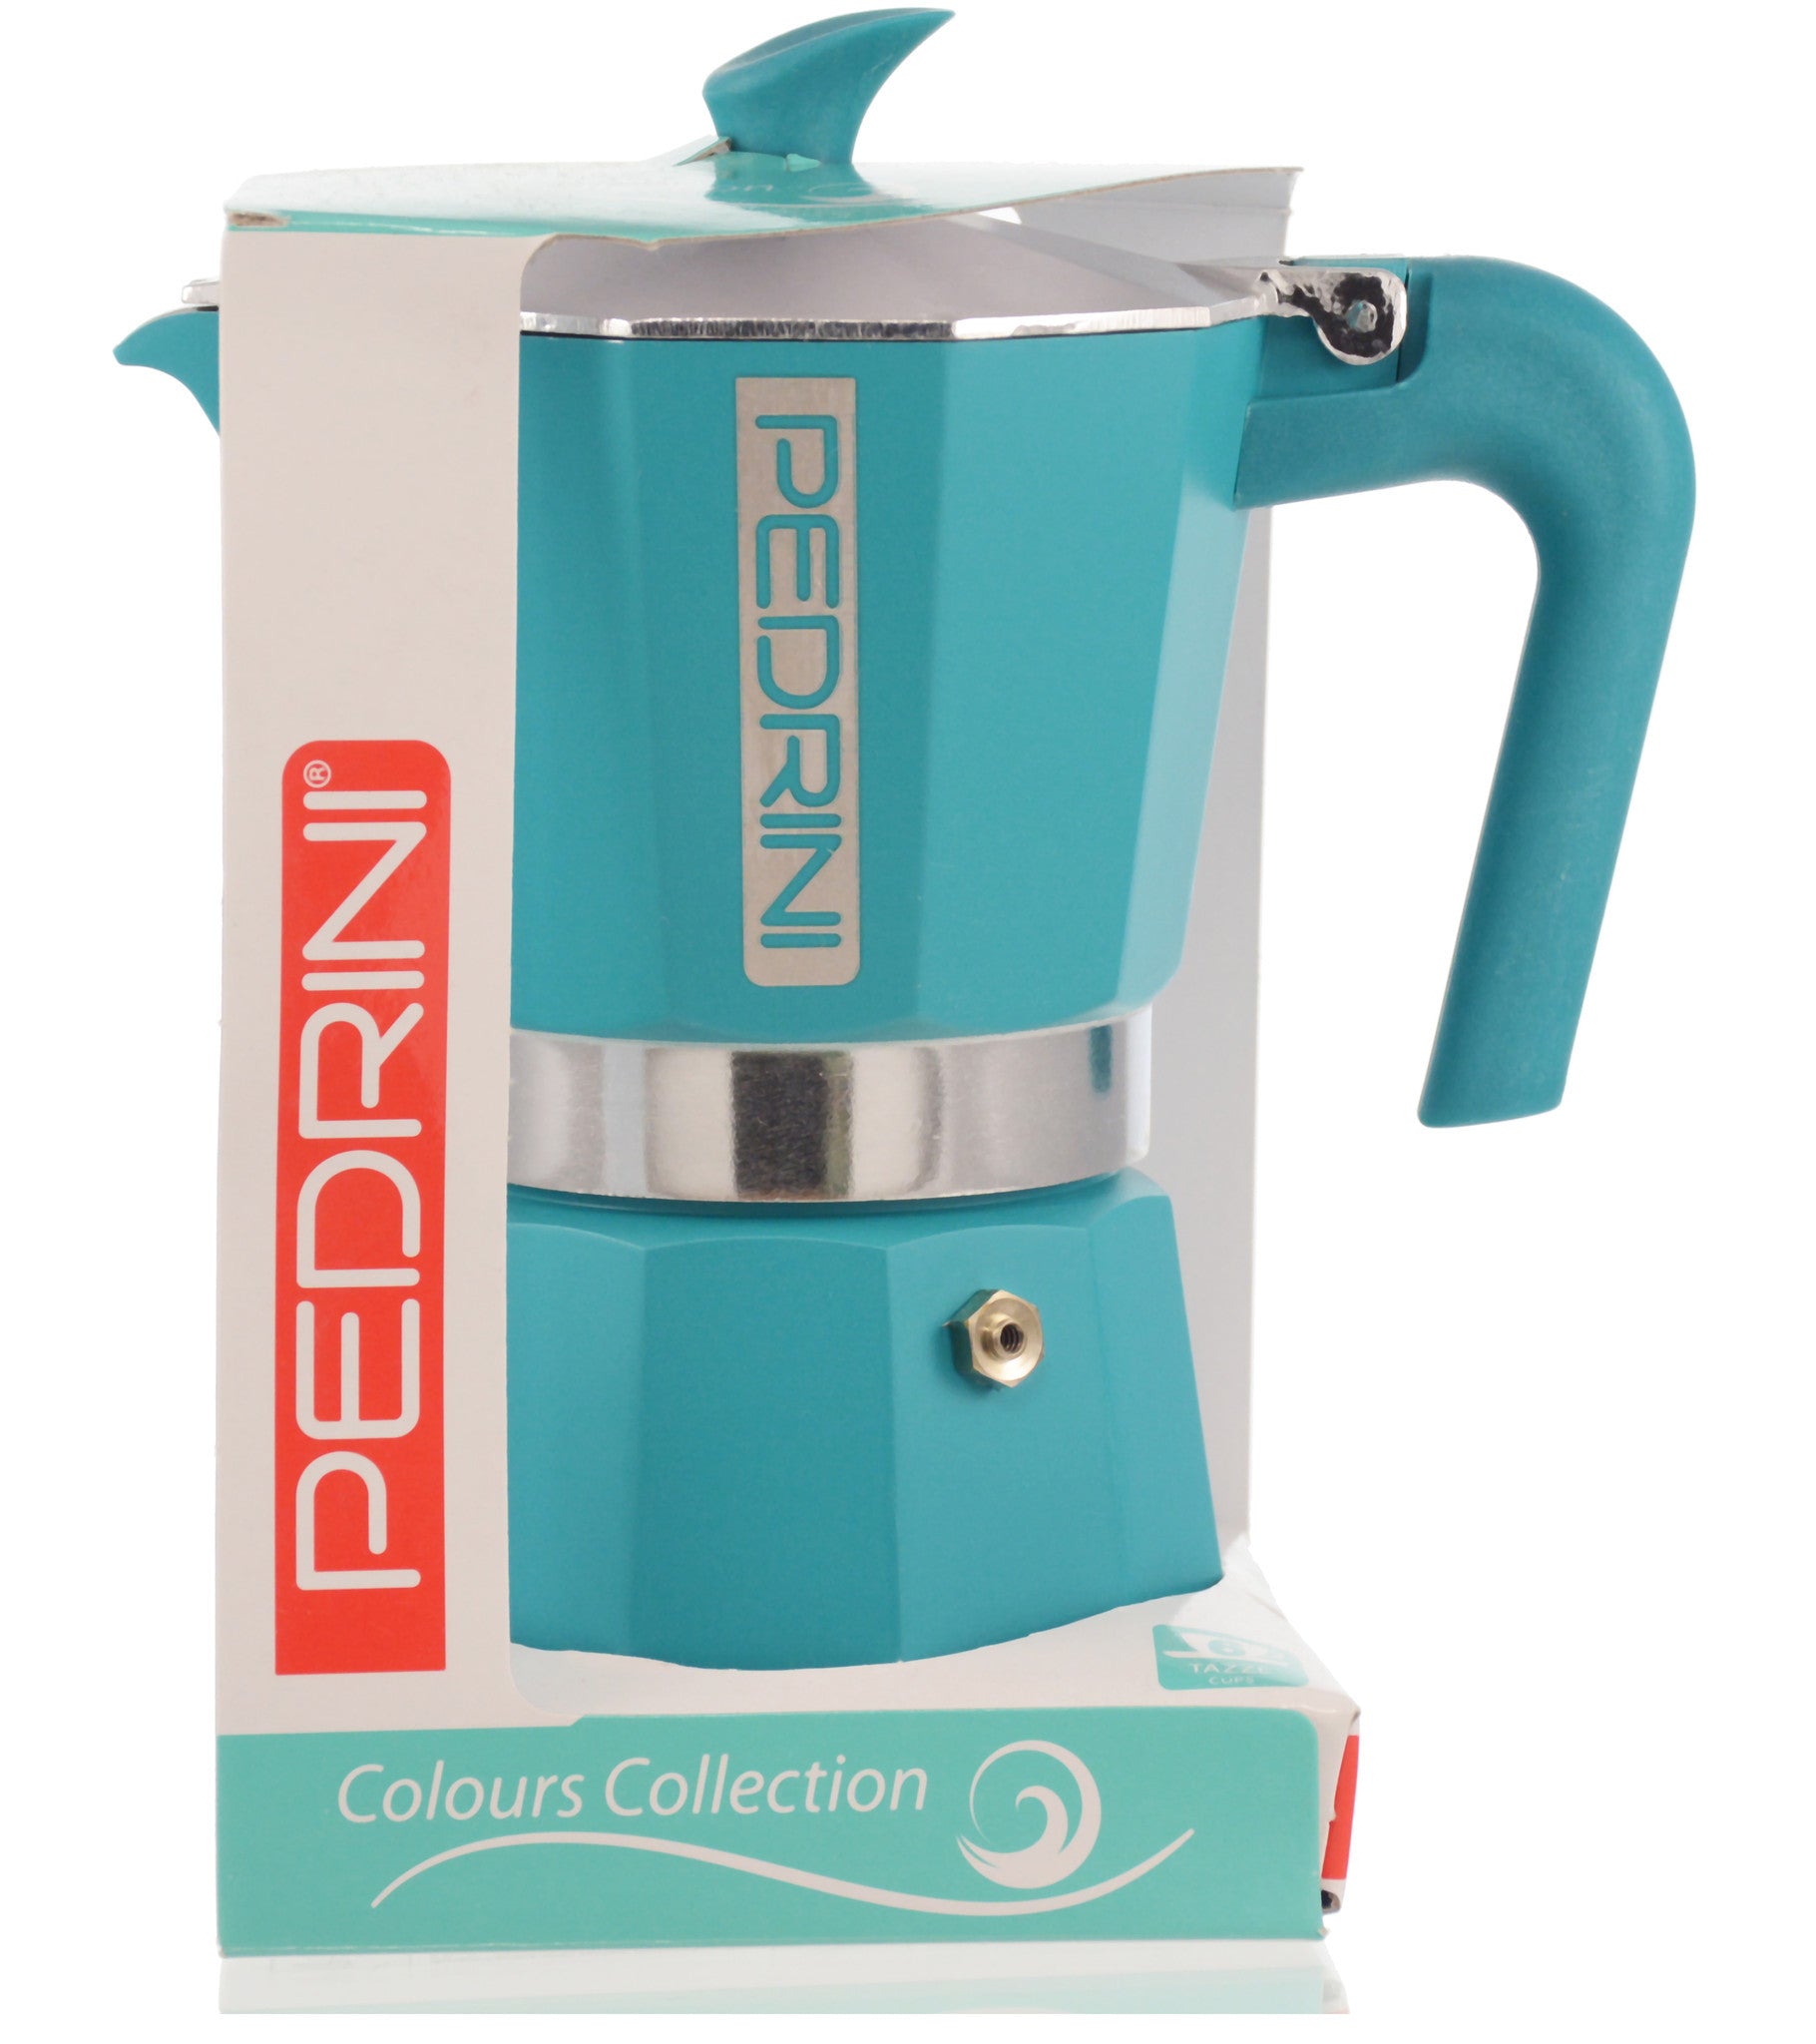 Pedrini Italy Colours Collection Stovetop Moka Espresso Maker 1, 2